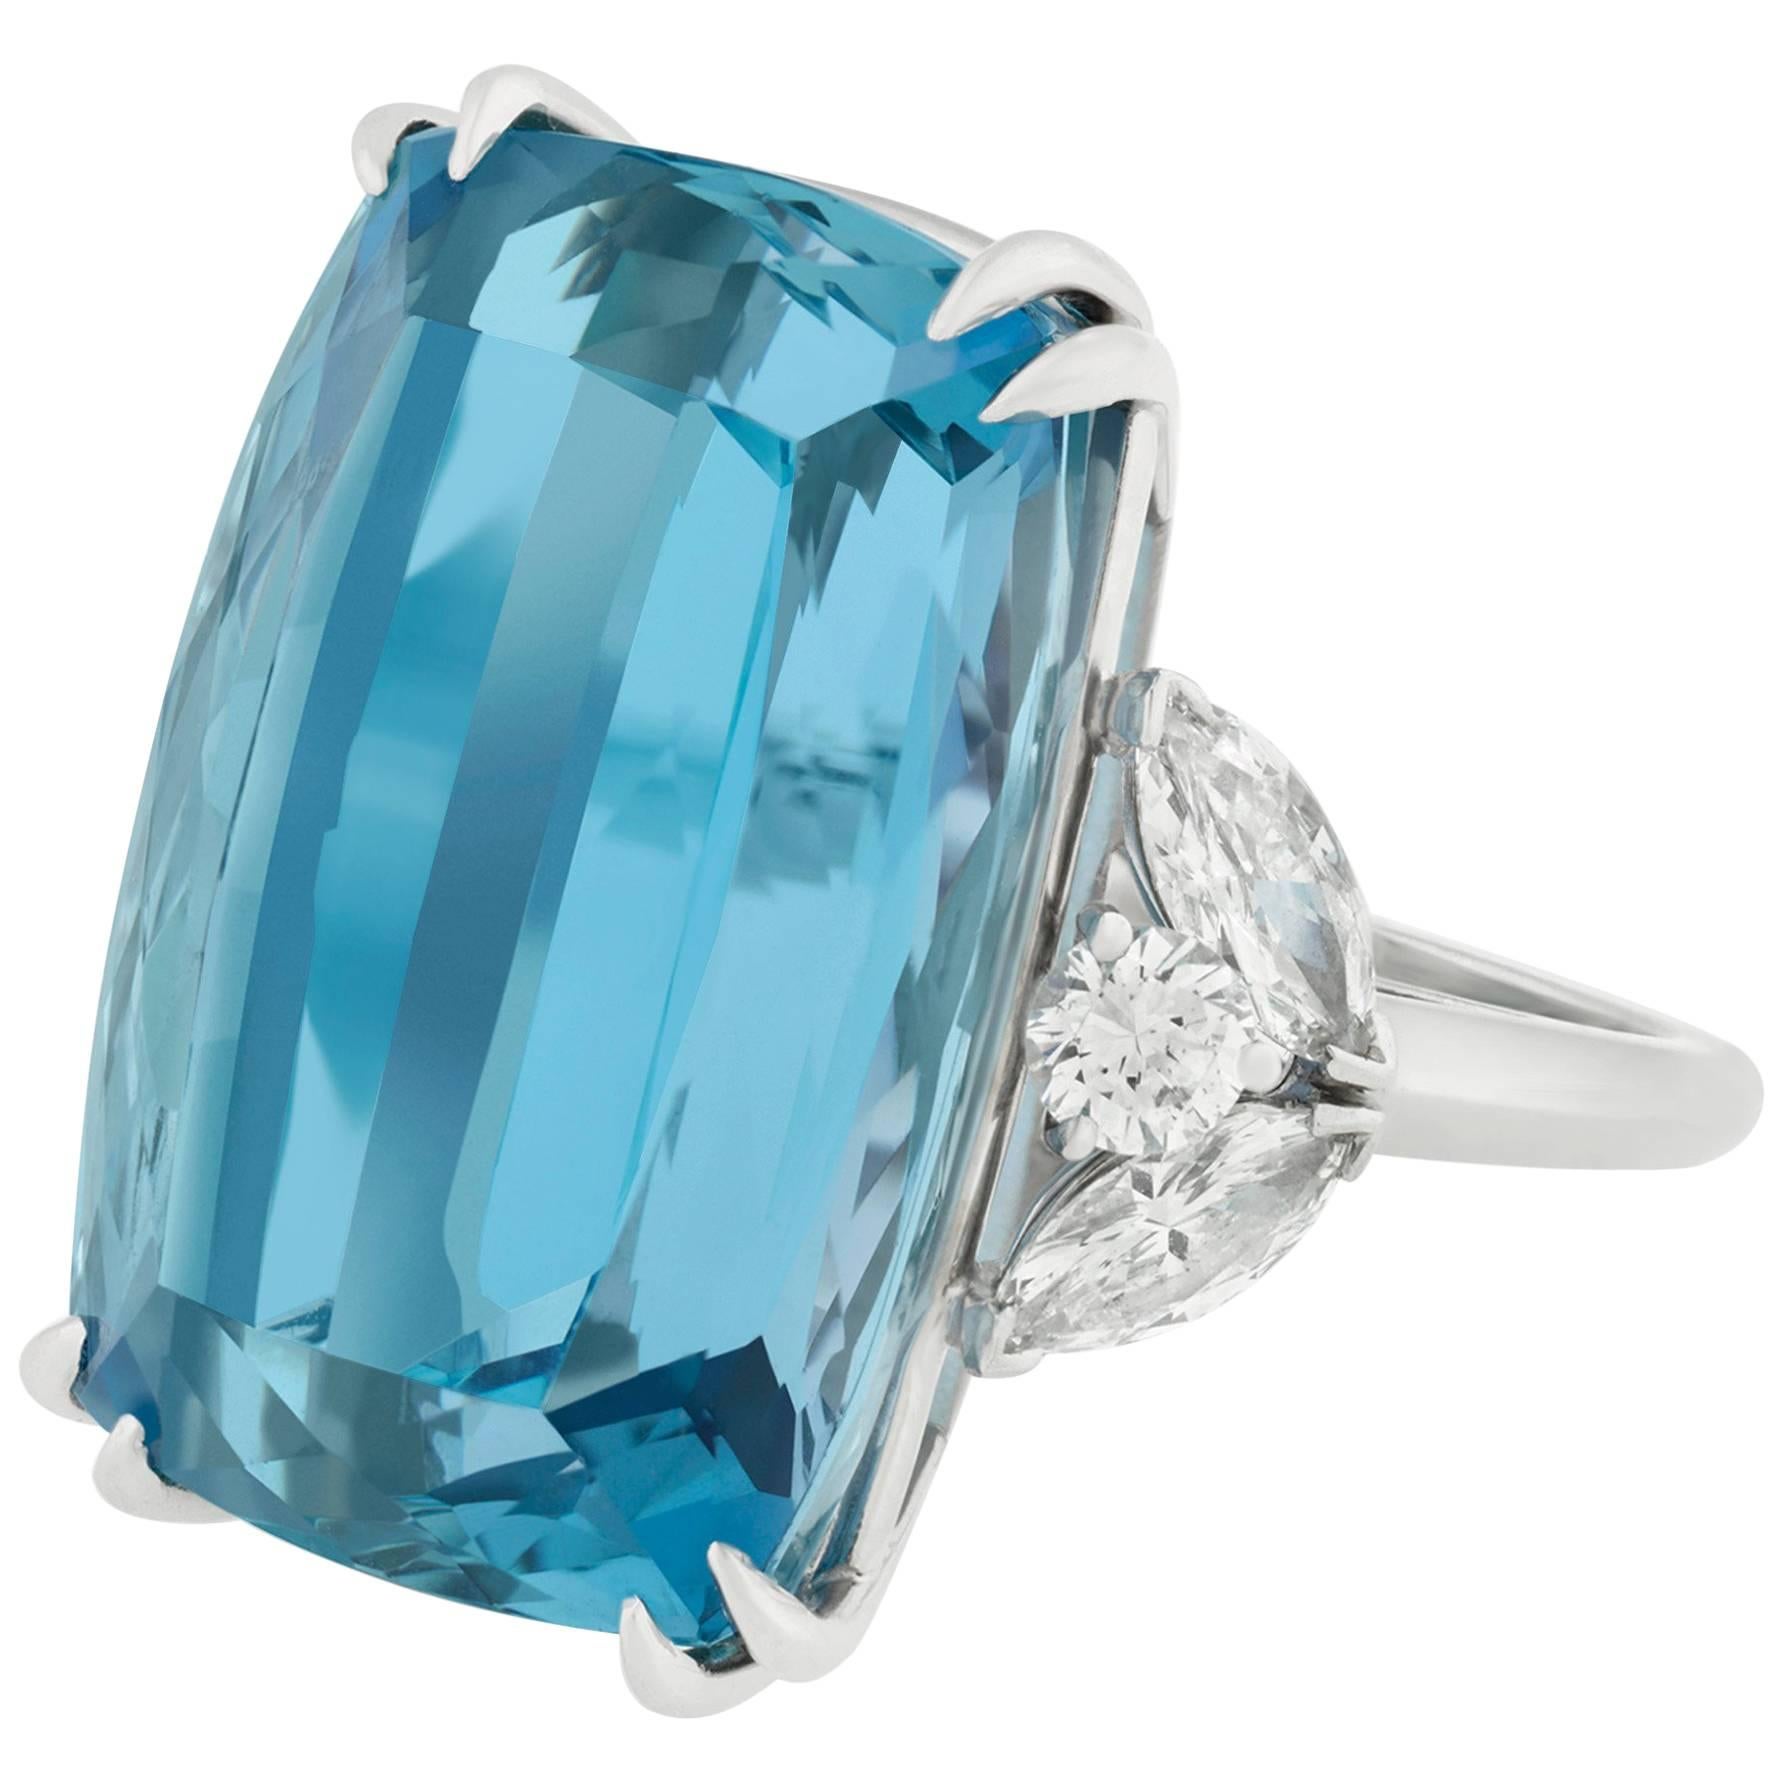 Van Cleef & Arpels Aquamarine and Diamond Ring, 34.11 Carat